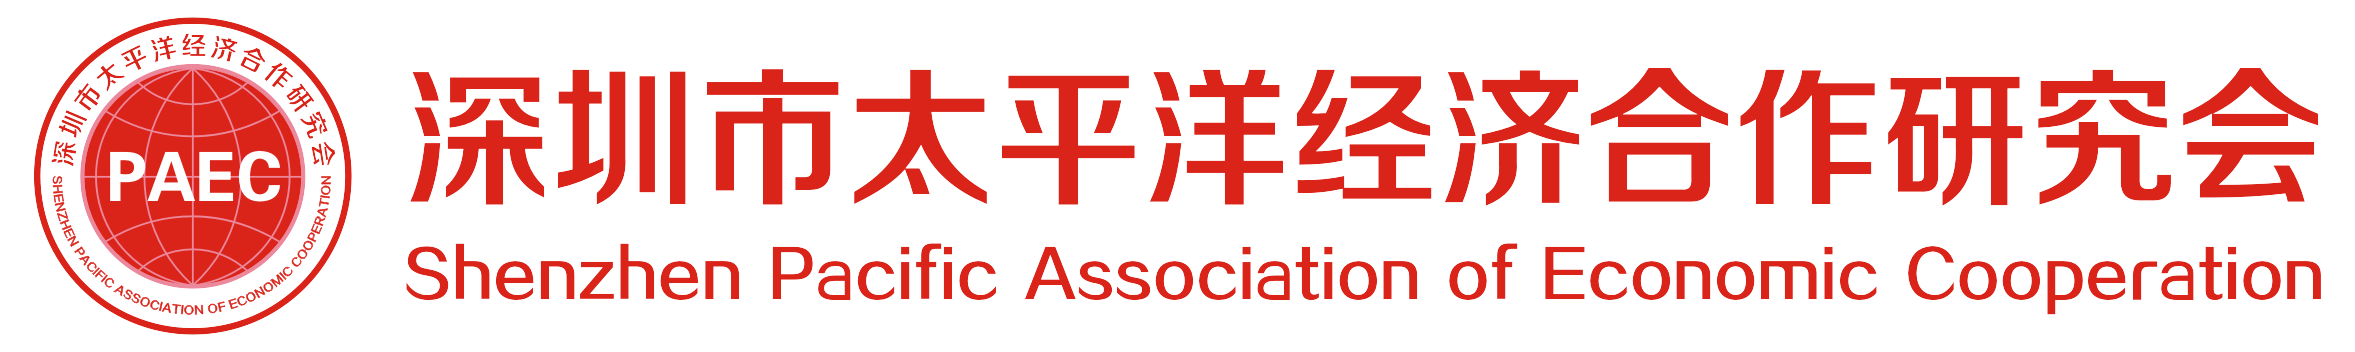 深圳市太平洋经济合作研究会 | PAEC